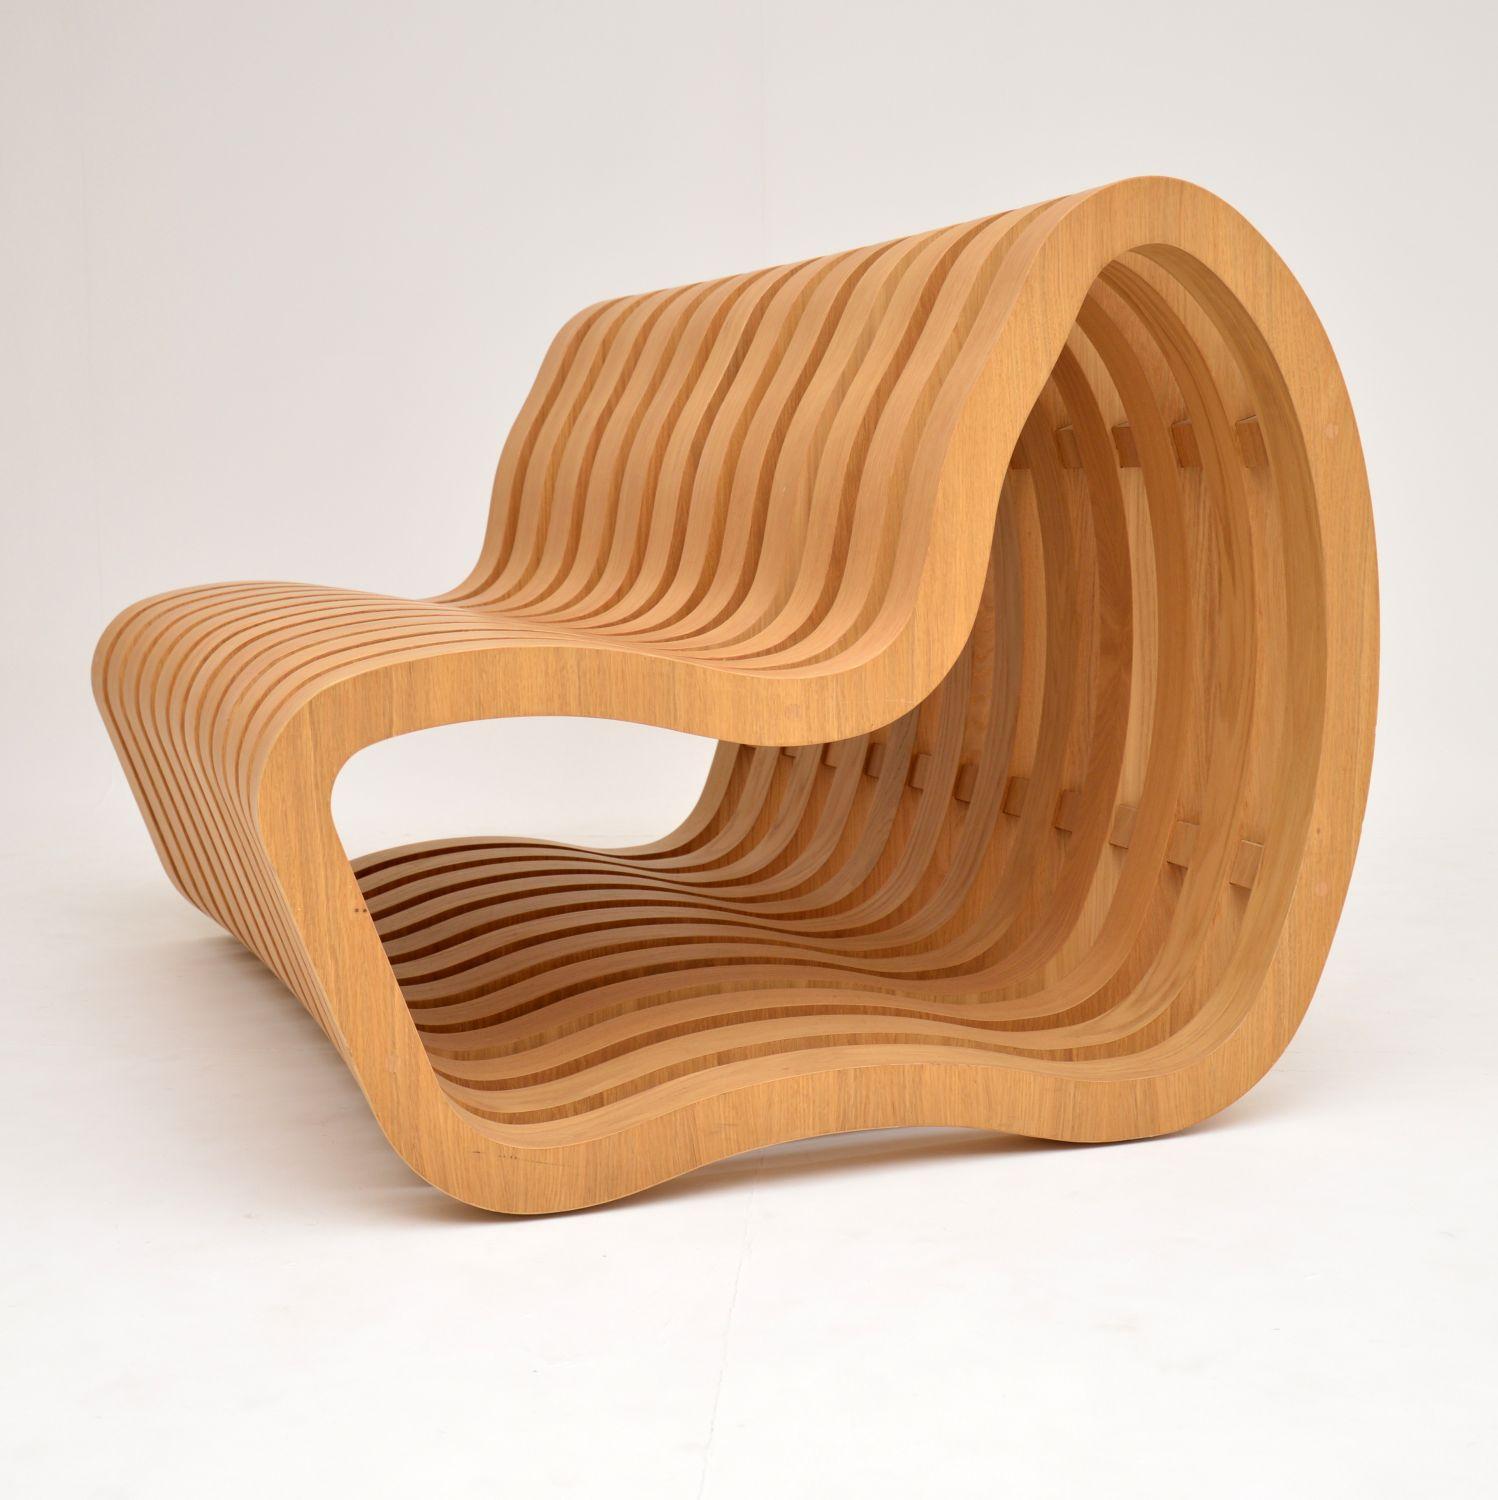 British Modernist “Curve Bench” by Nina Moeller Designs For Sale